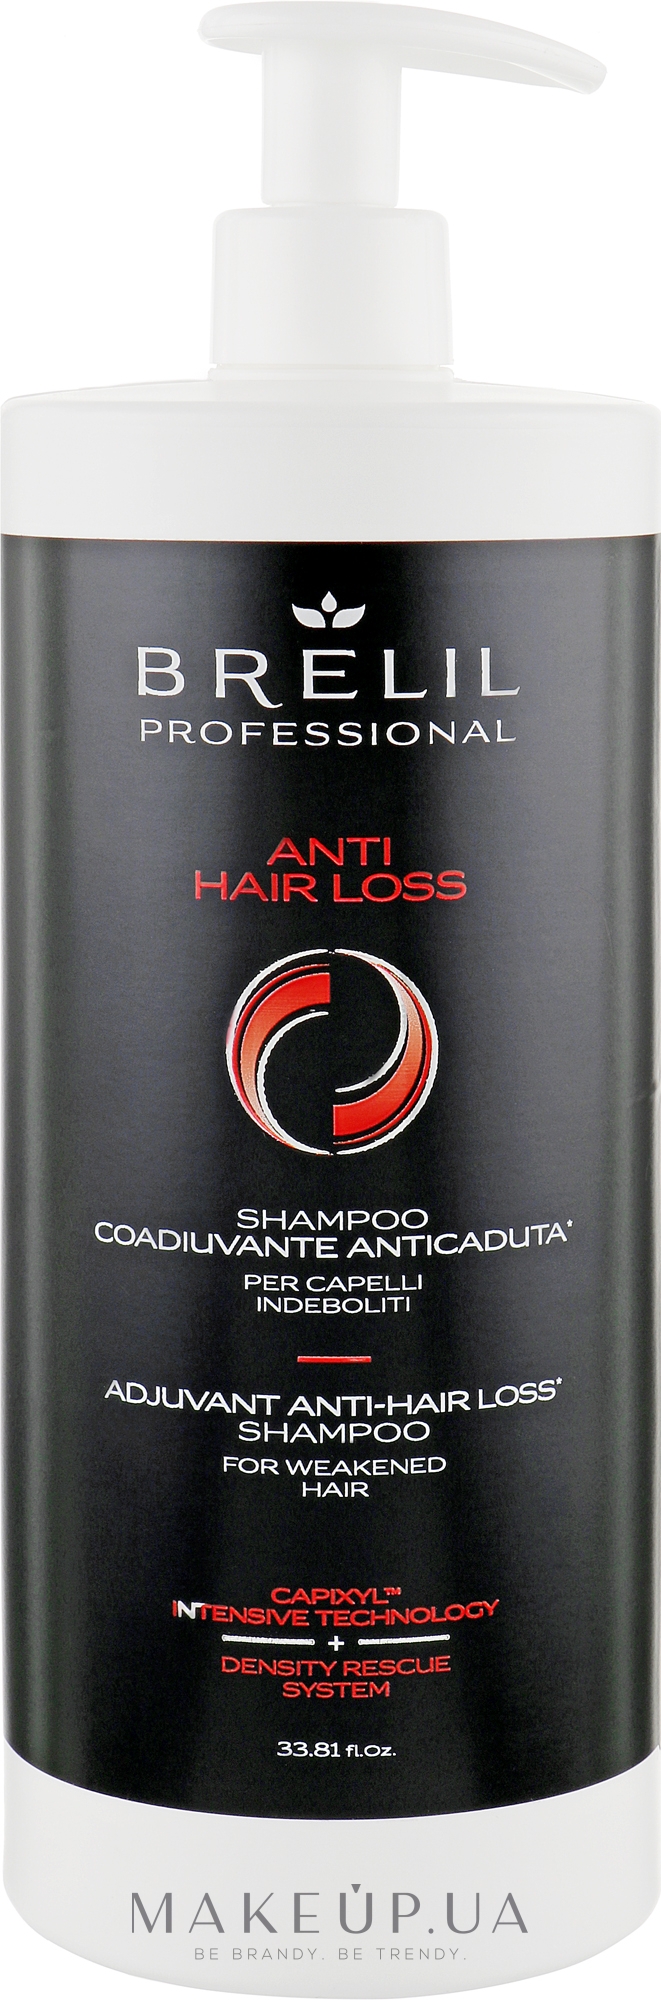 Шампунь против выпадения волос со стволовыим клетками и капиксилом - Brelil Anti Hair Loss Shampoo — фото 1000ml